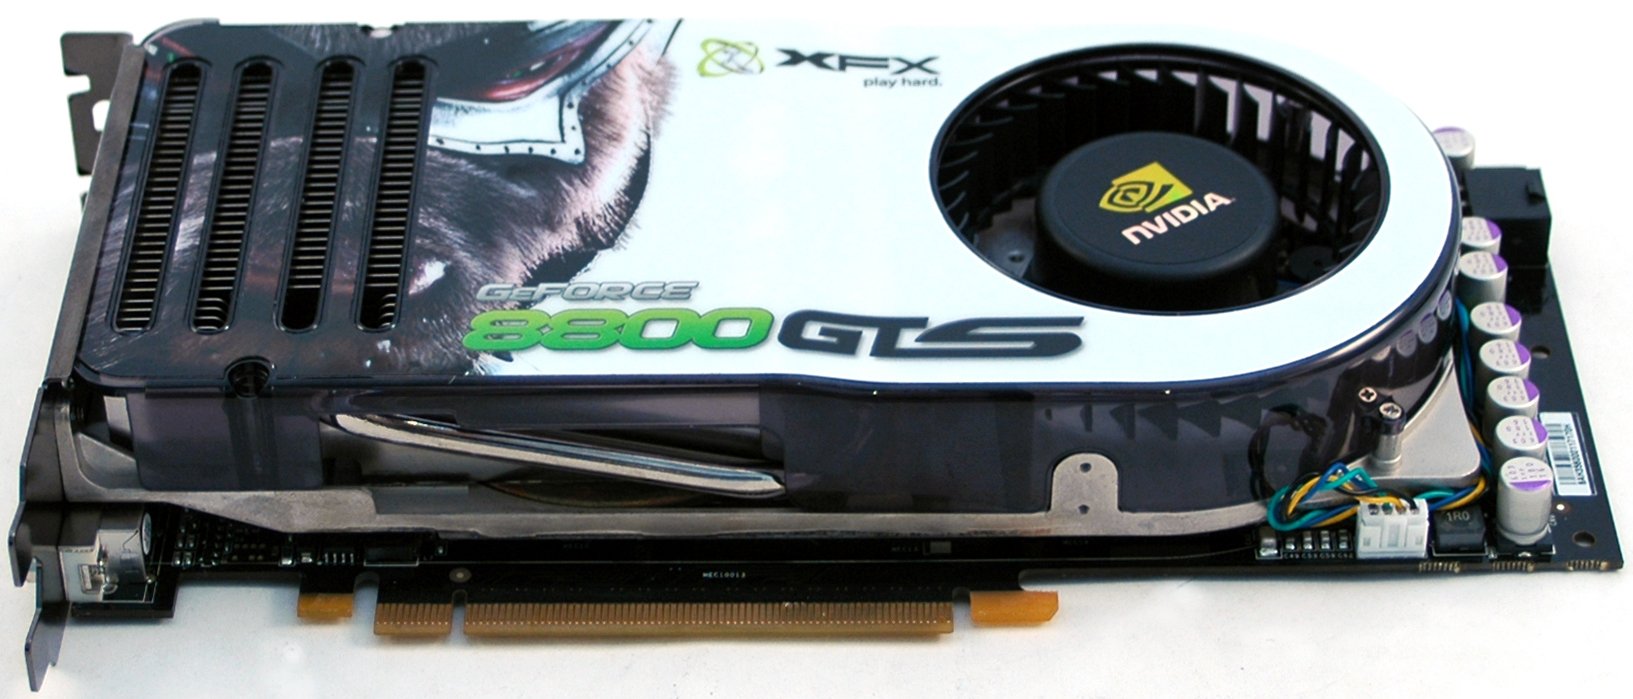 Geforce 8800 gts. XFX GEFORCE 8800 GTS. GEFORCE 8800 GTS (g80). GTX 8800 Ultra. NVIDIA XFX 8800 GTS.